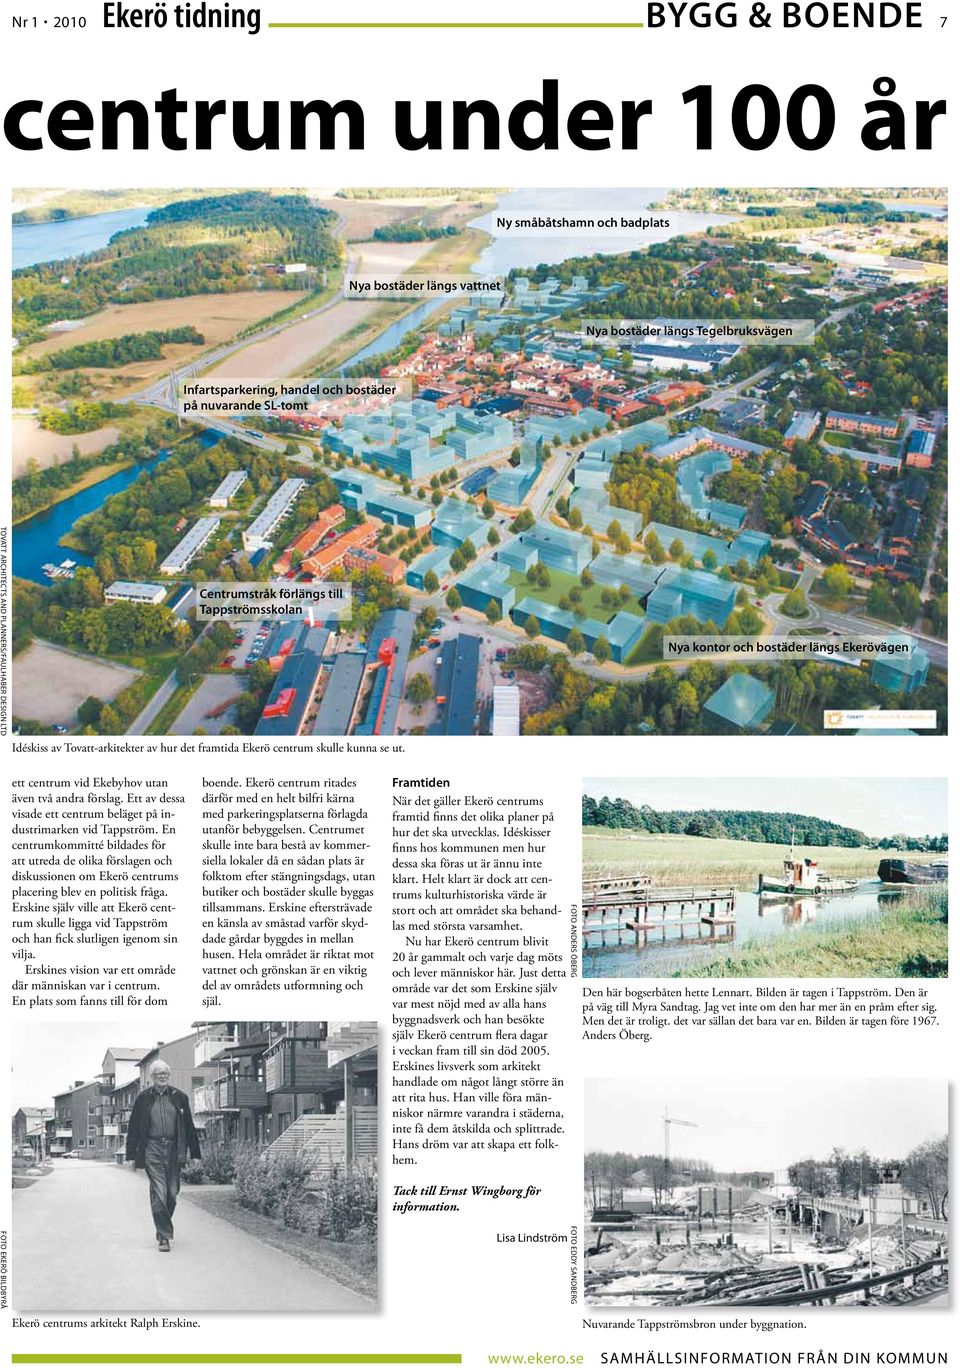 Nya kontor och bostäder längs Ekerövägen ett centrum vid Ekebyhov utan även två andra förslag. Ett av dessa visade ett centrum beläget på industrimarken vid Tappström.